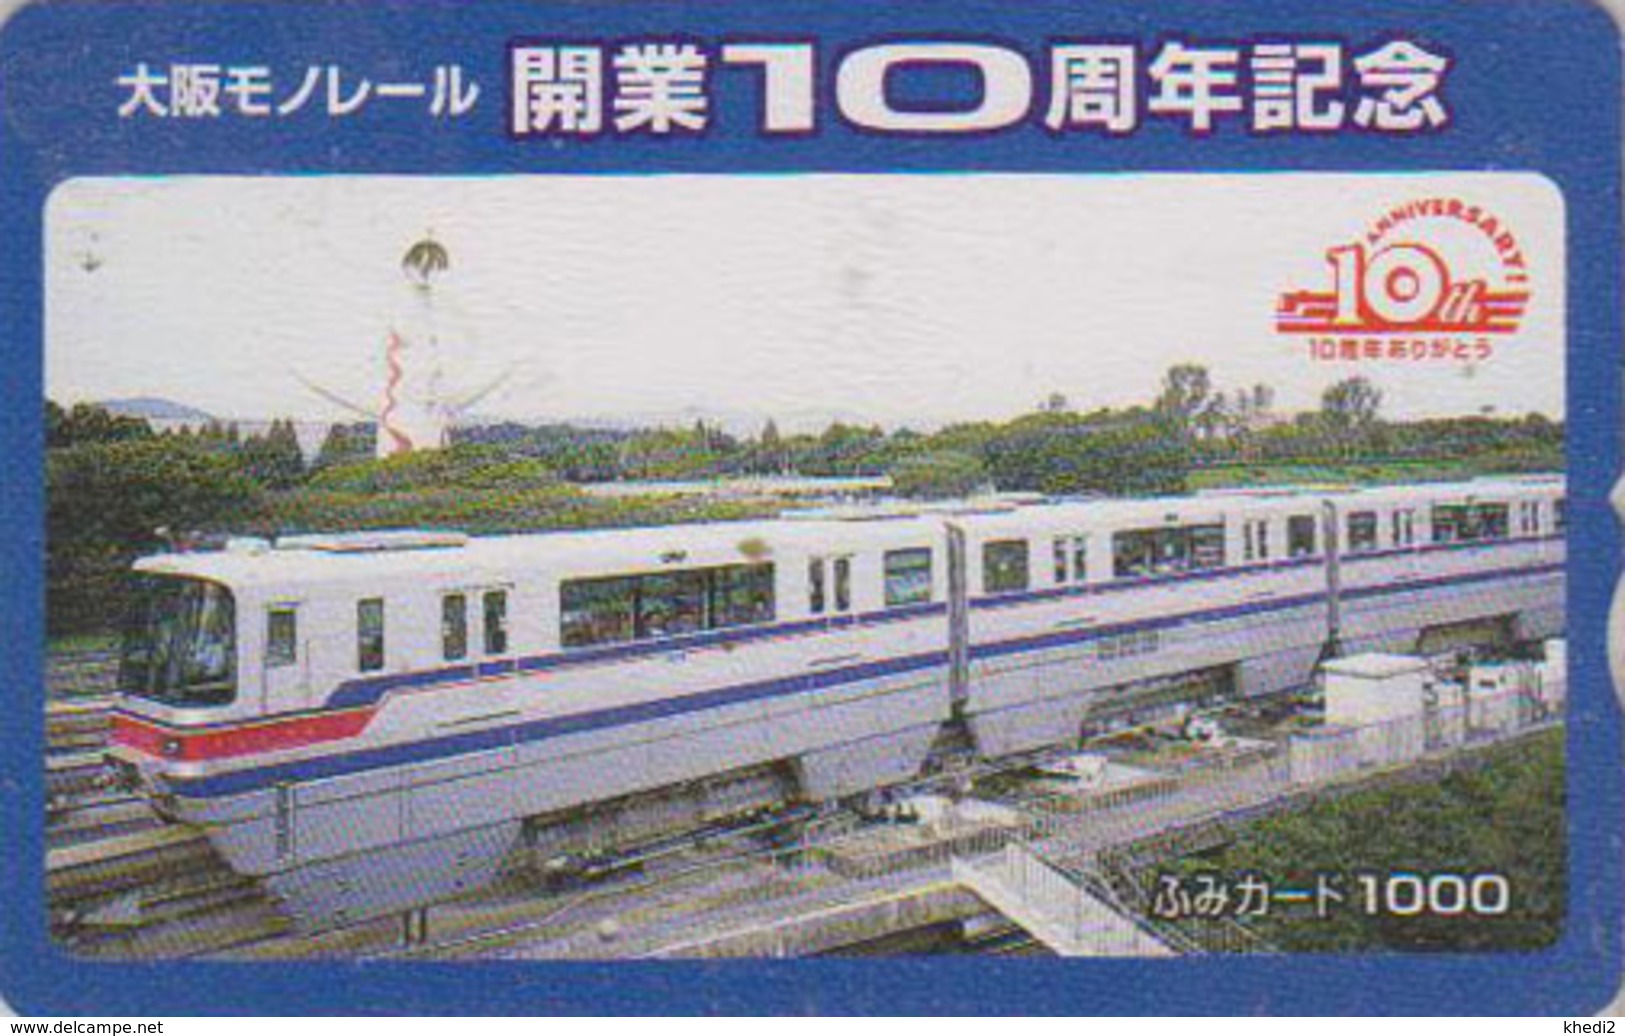 Carte Prépayée Japon - TRAIN MONORAIL - ZUG Eisenbahn - TREIN - Japan Prepaid Fumi Card - 3316 - Fari